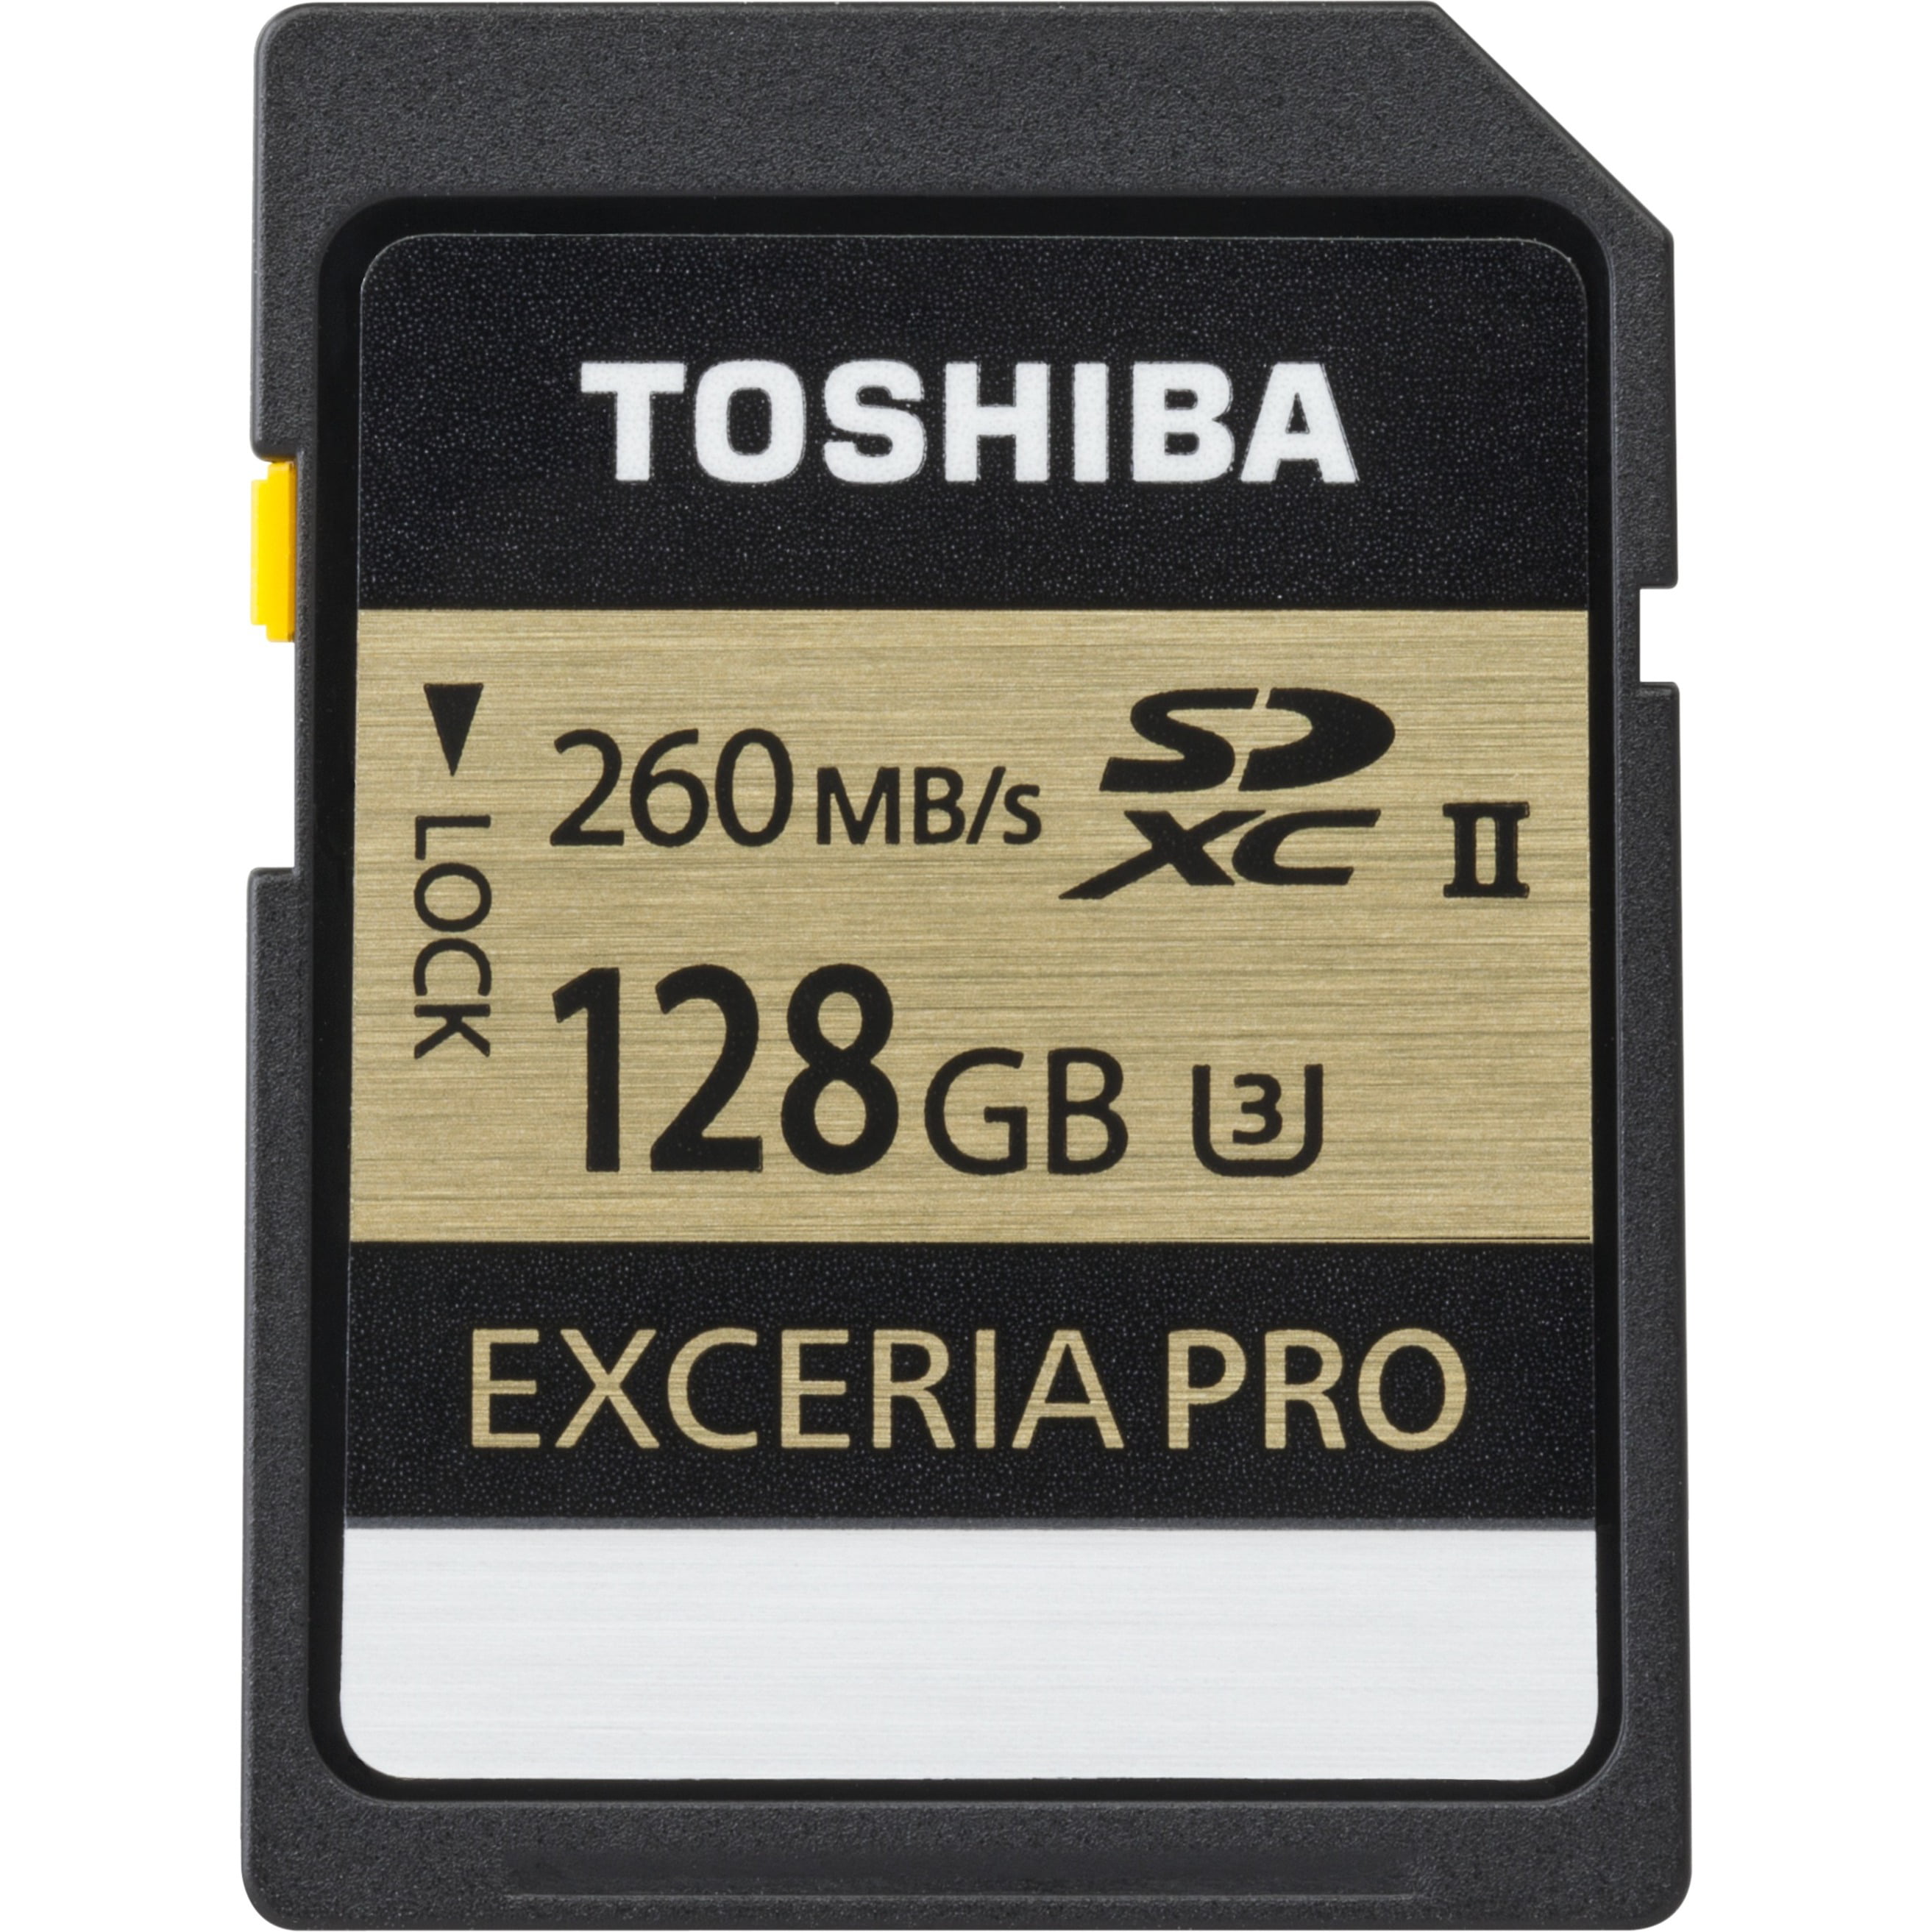 Toshiba Exceria Pro 128 GB Class 3/UHS-II SDXC